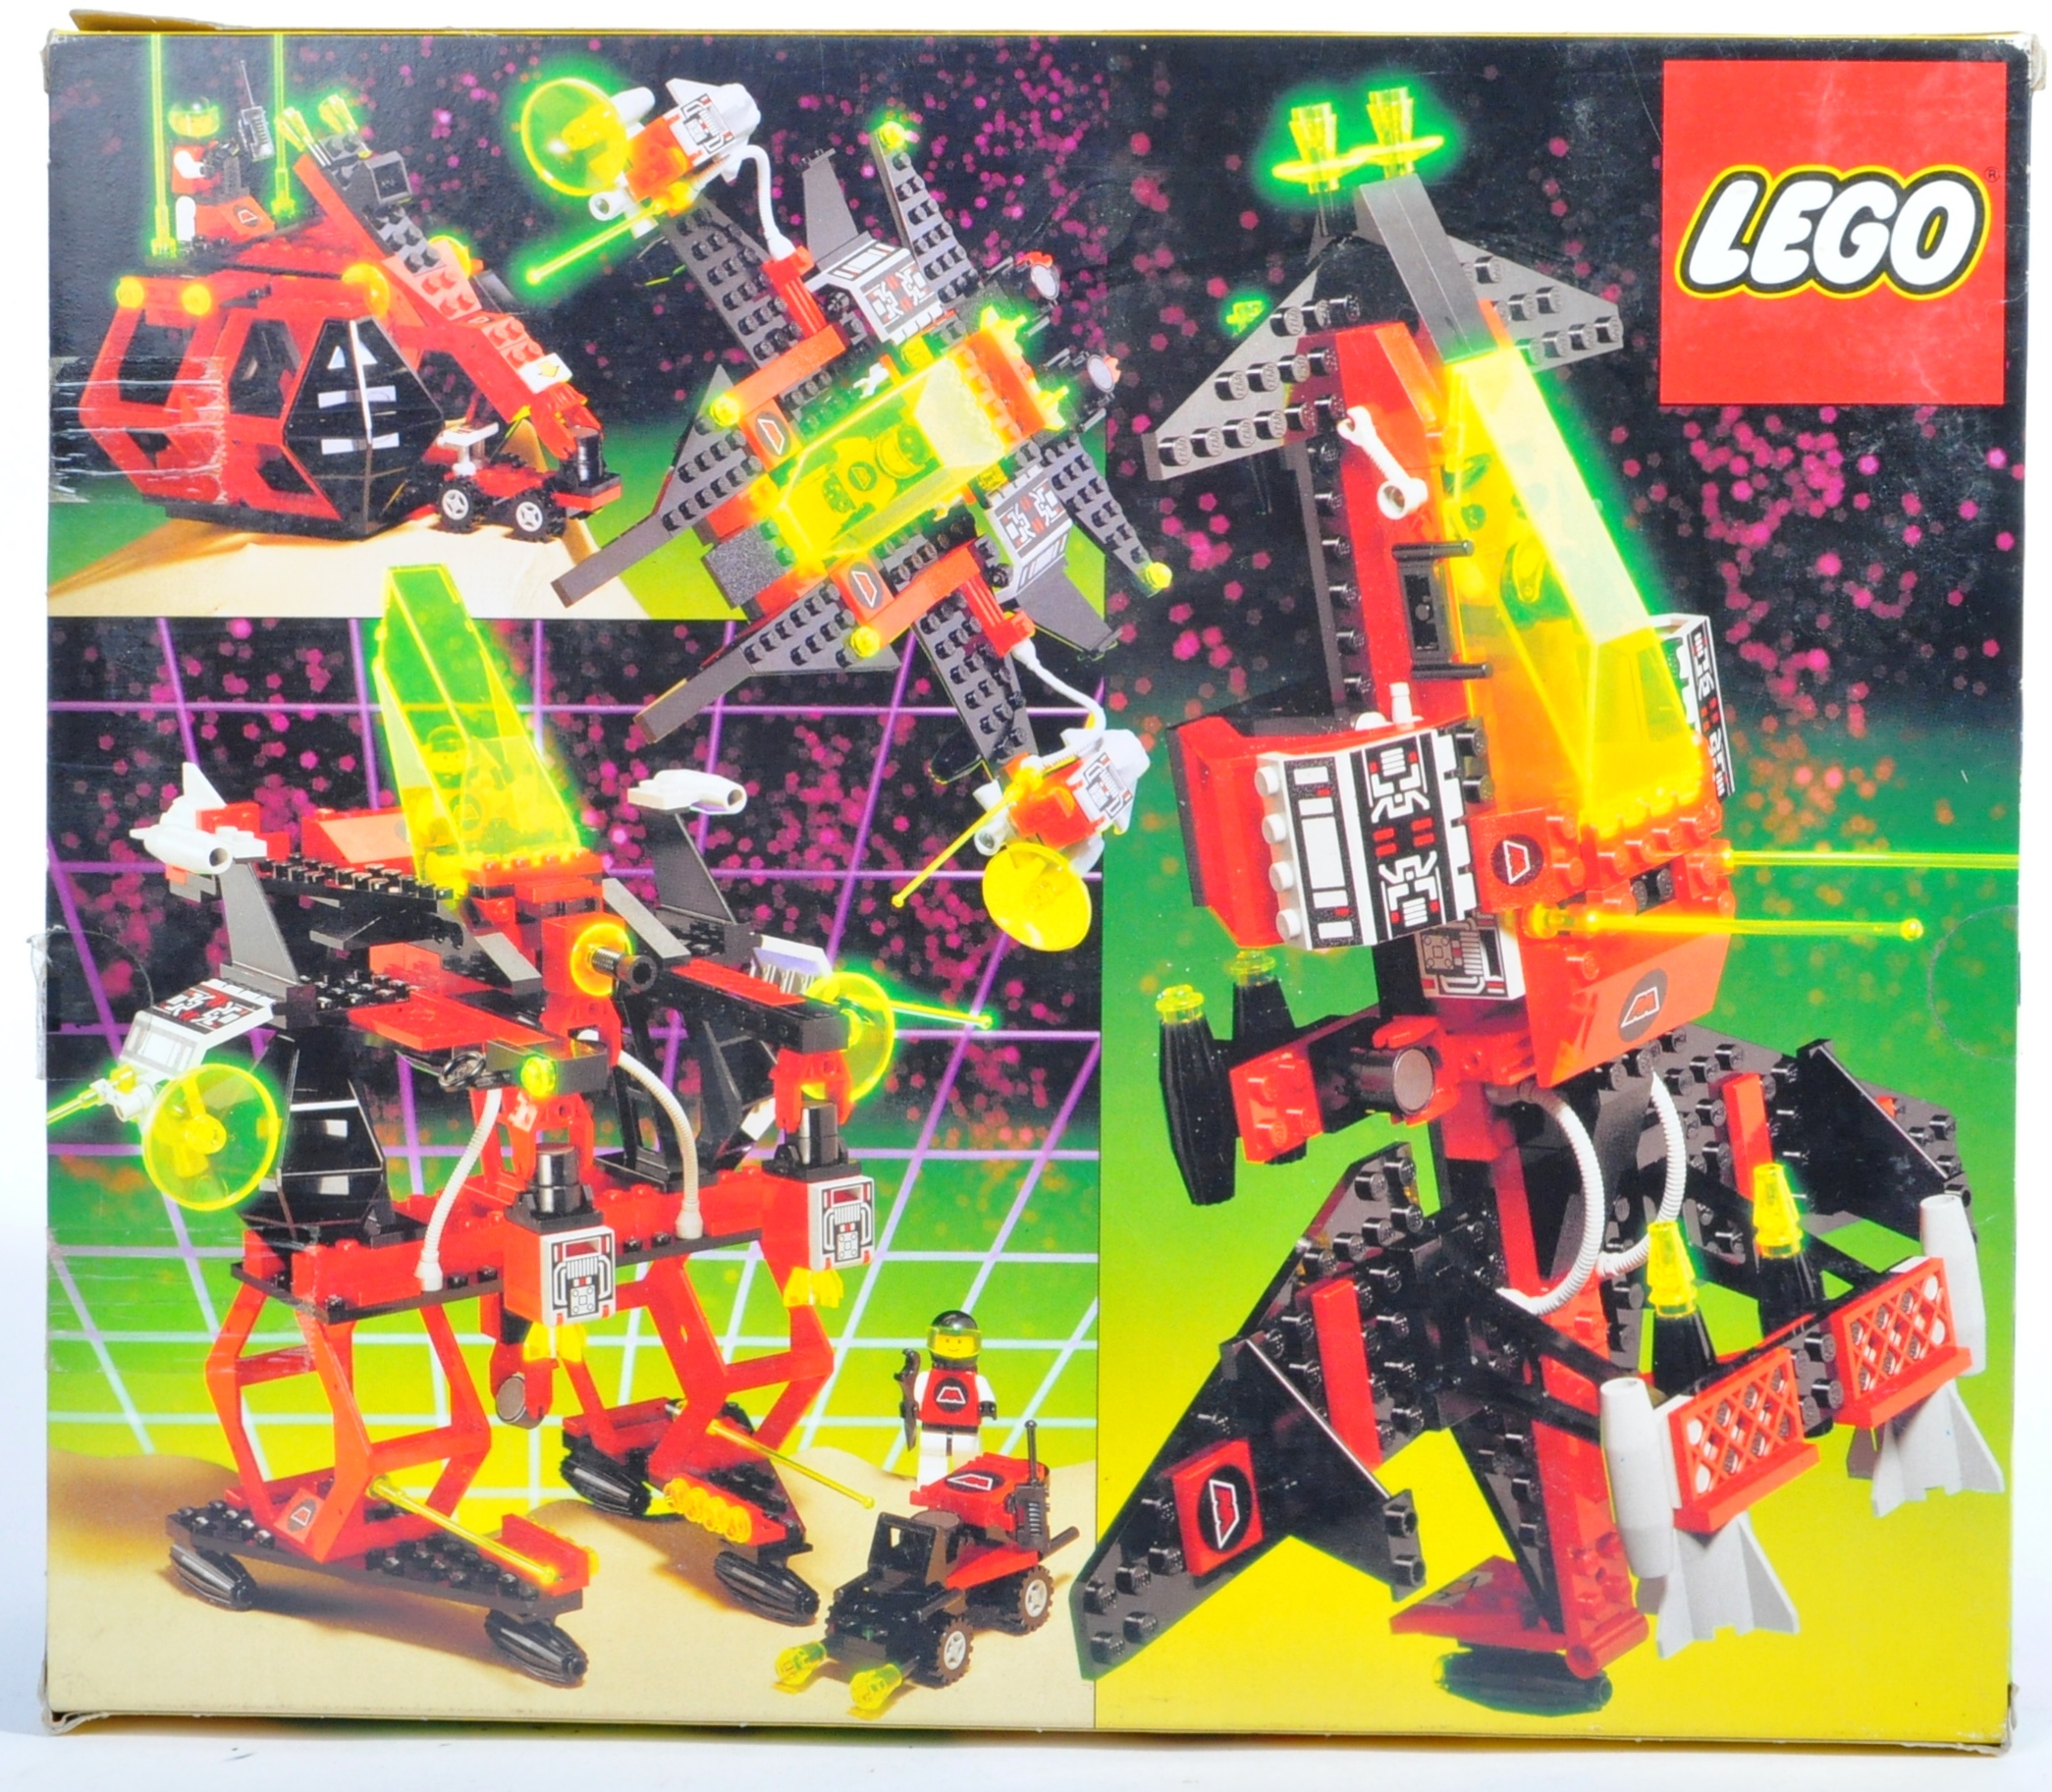 LEGO SET - LEGO LAND - 6956 - STELLA RECON VOYAGER - Image 2 of 6